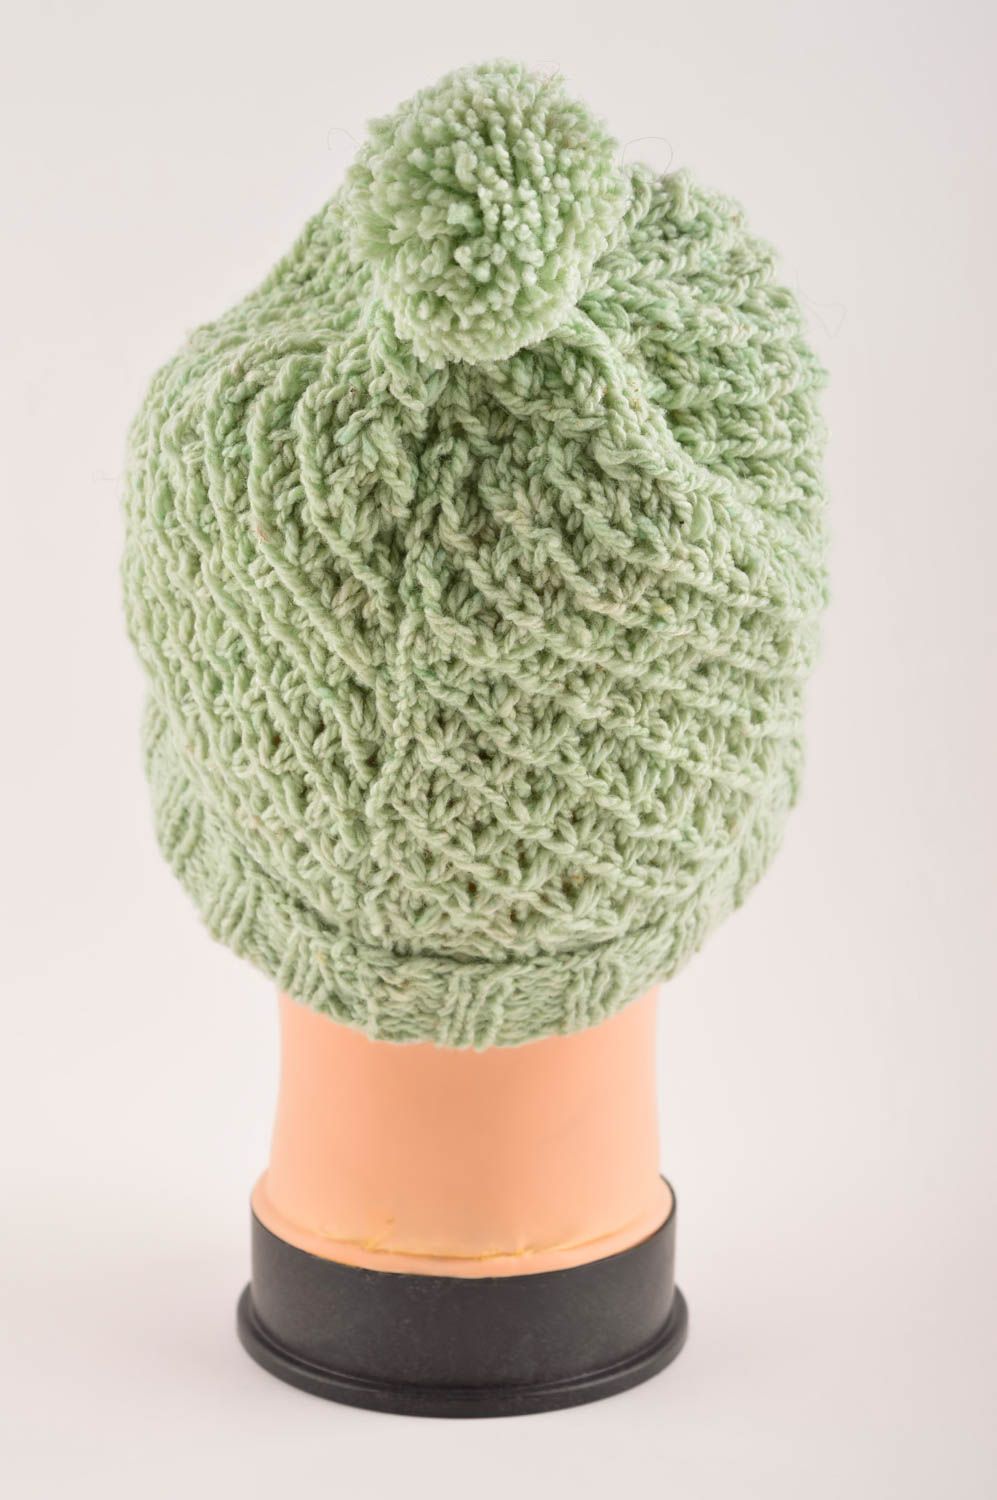 Helle gehäkelte Kindermütze handgemachte Mütze Kopf Accessoires schön grün foto 4